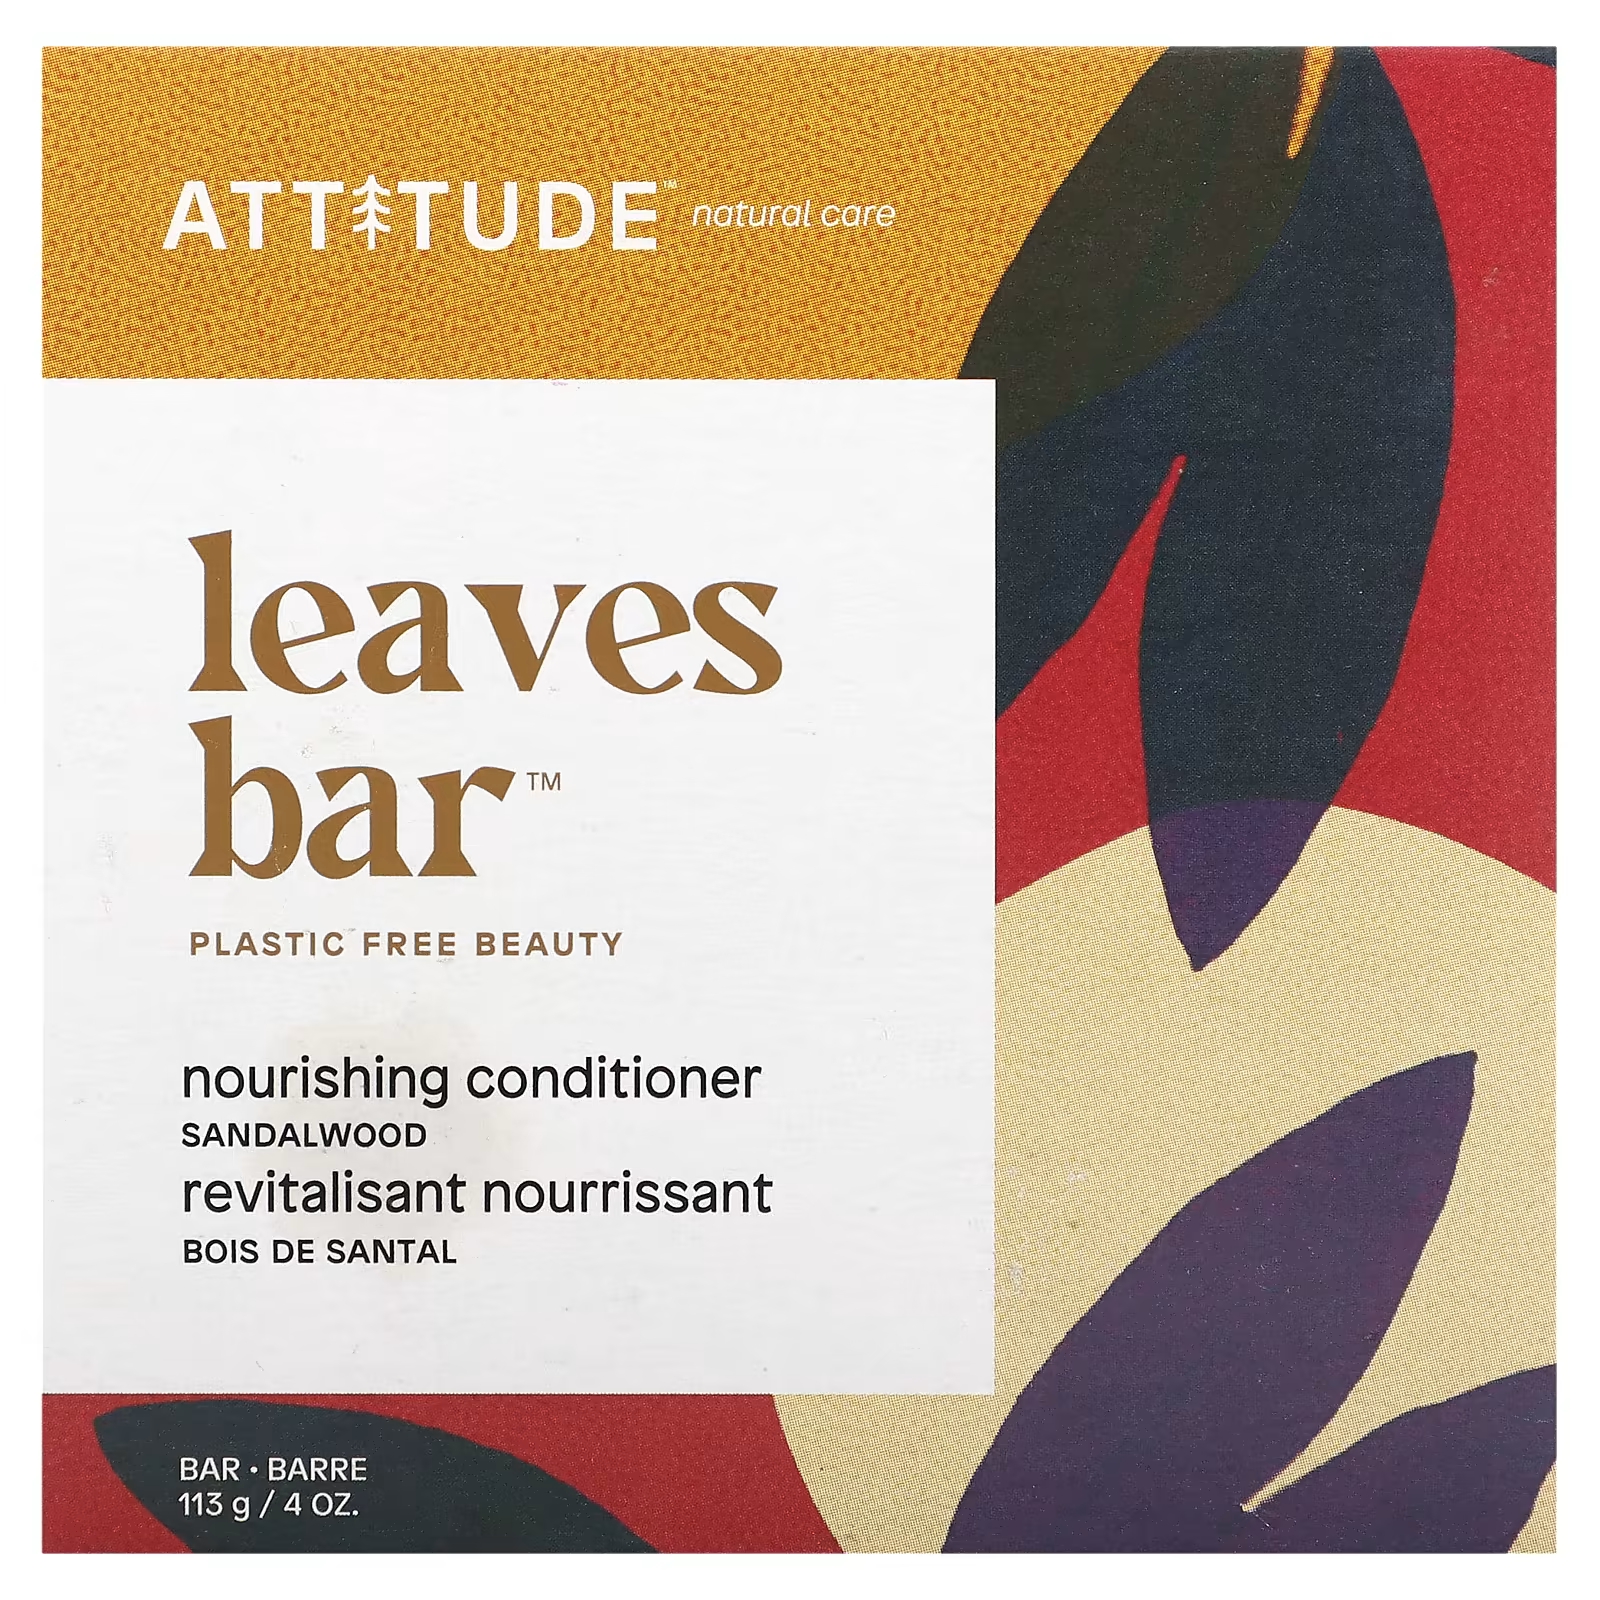 Кондиционер ATTITUDE Leaves Bar питательный сандаловое дерево, 113 г детокс кондиционер attitude leaves bar морская соль 113 г